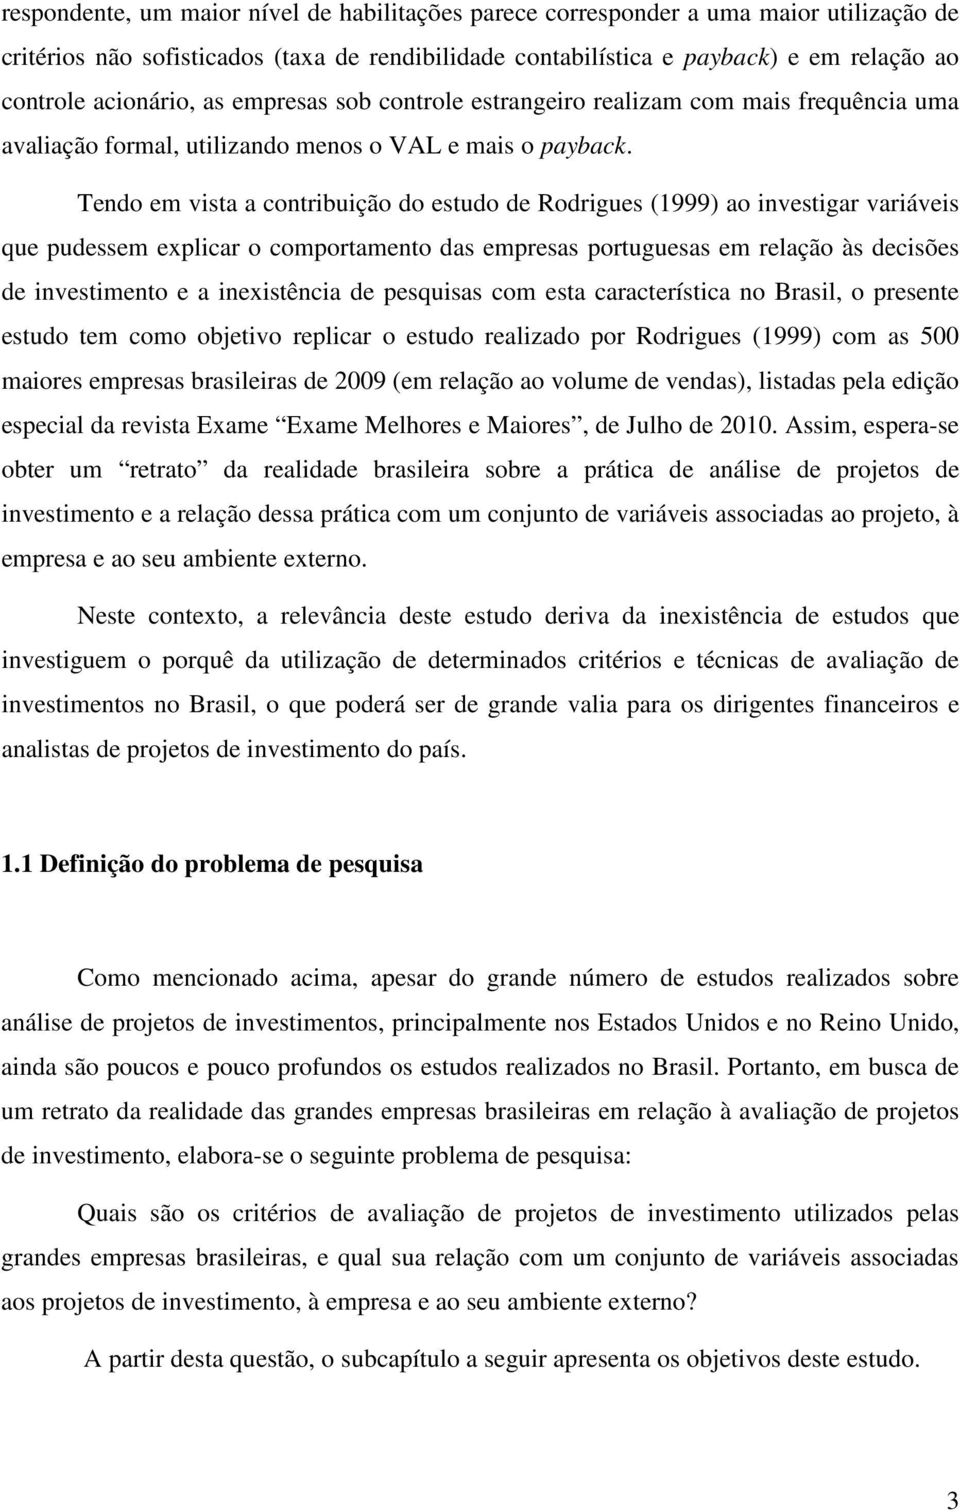 Tendo em vista a contribuição do estudo de Rodrigues (1999) ao investigar variáveis que pudessem explicar o comportamento das empresas portuguesas em relação às decisões de investimento e a